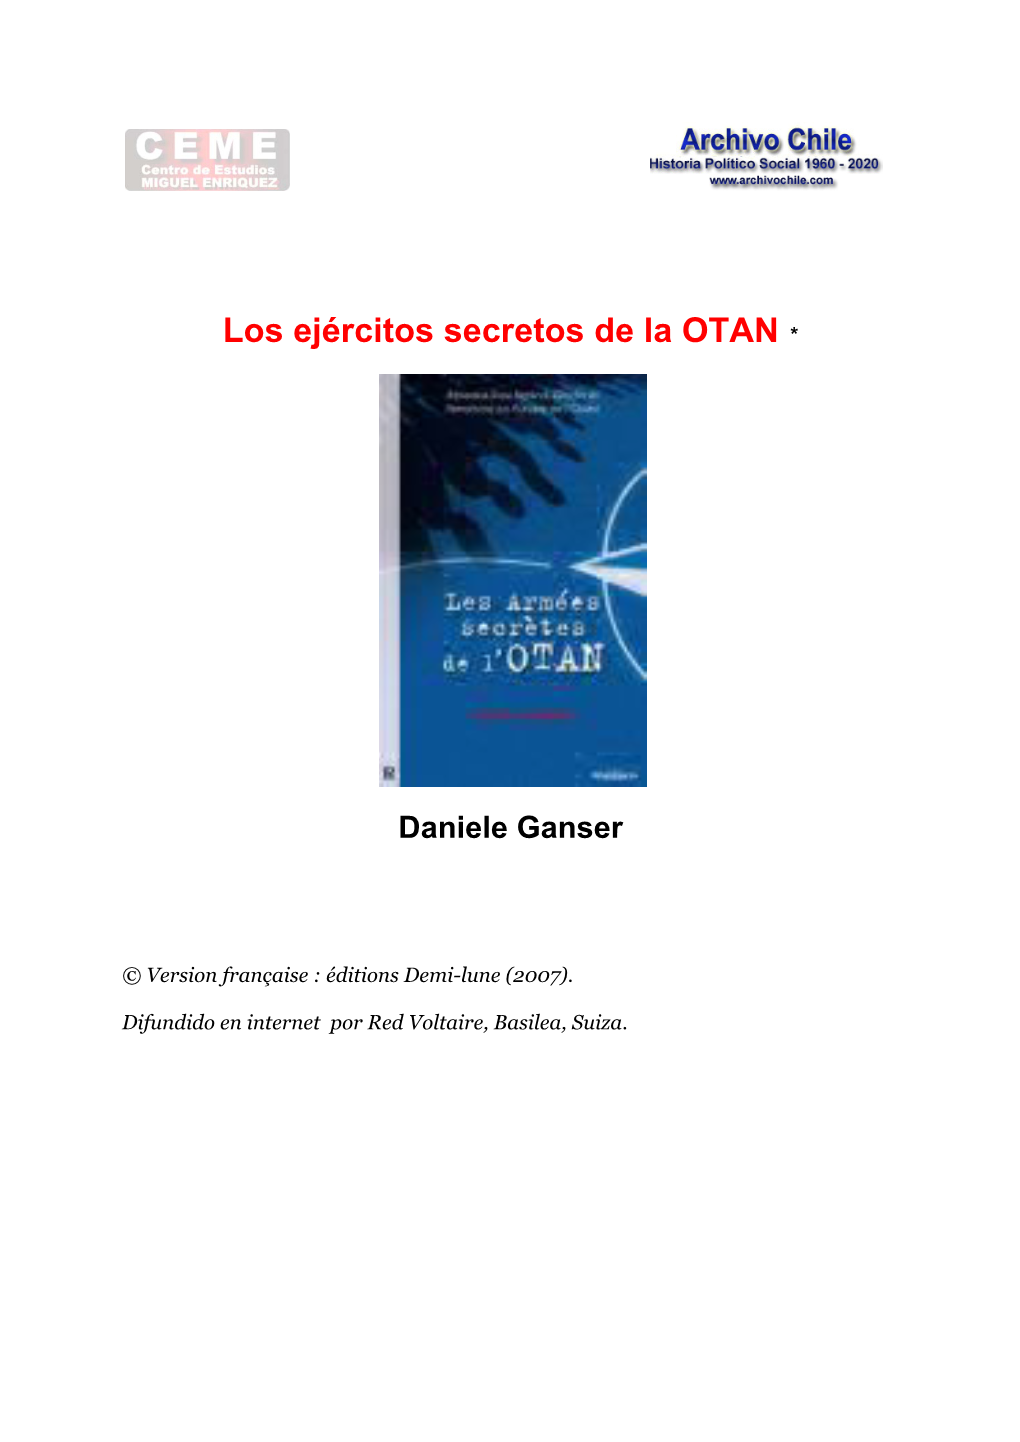 Los Ejércitos Secretos De La OTAN. Daniele Ganser